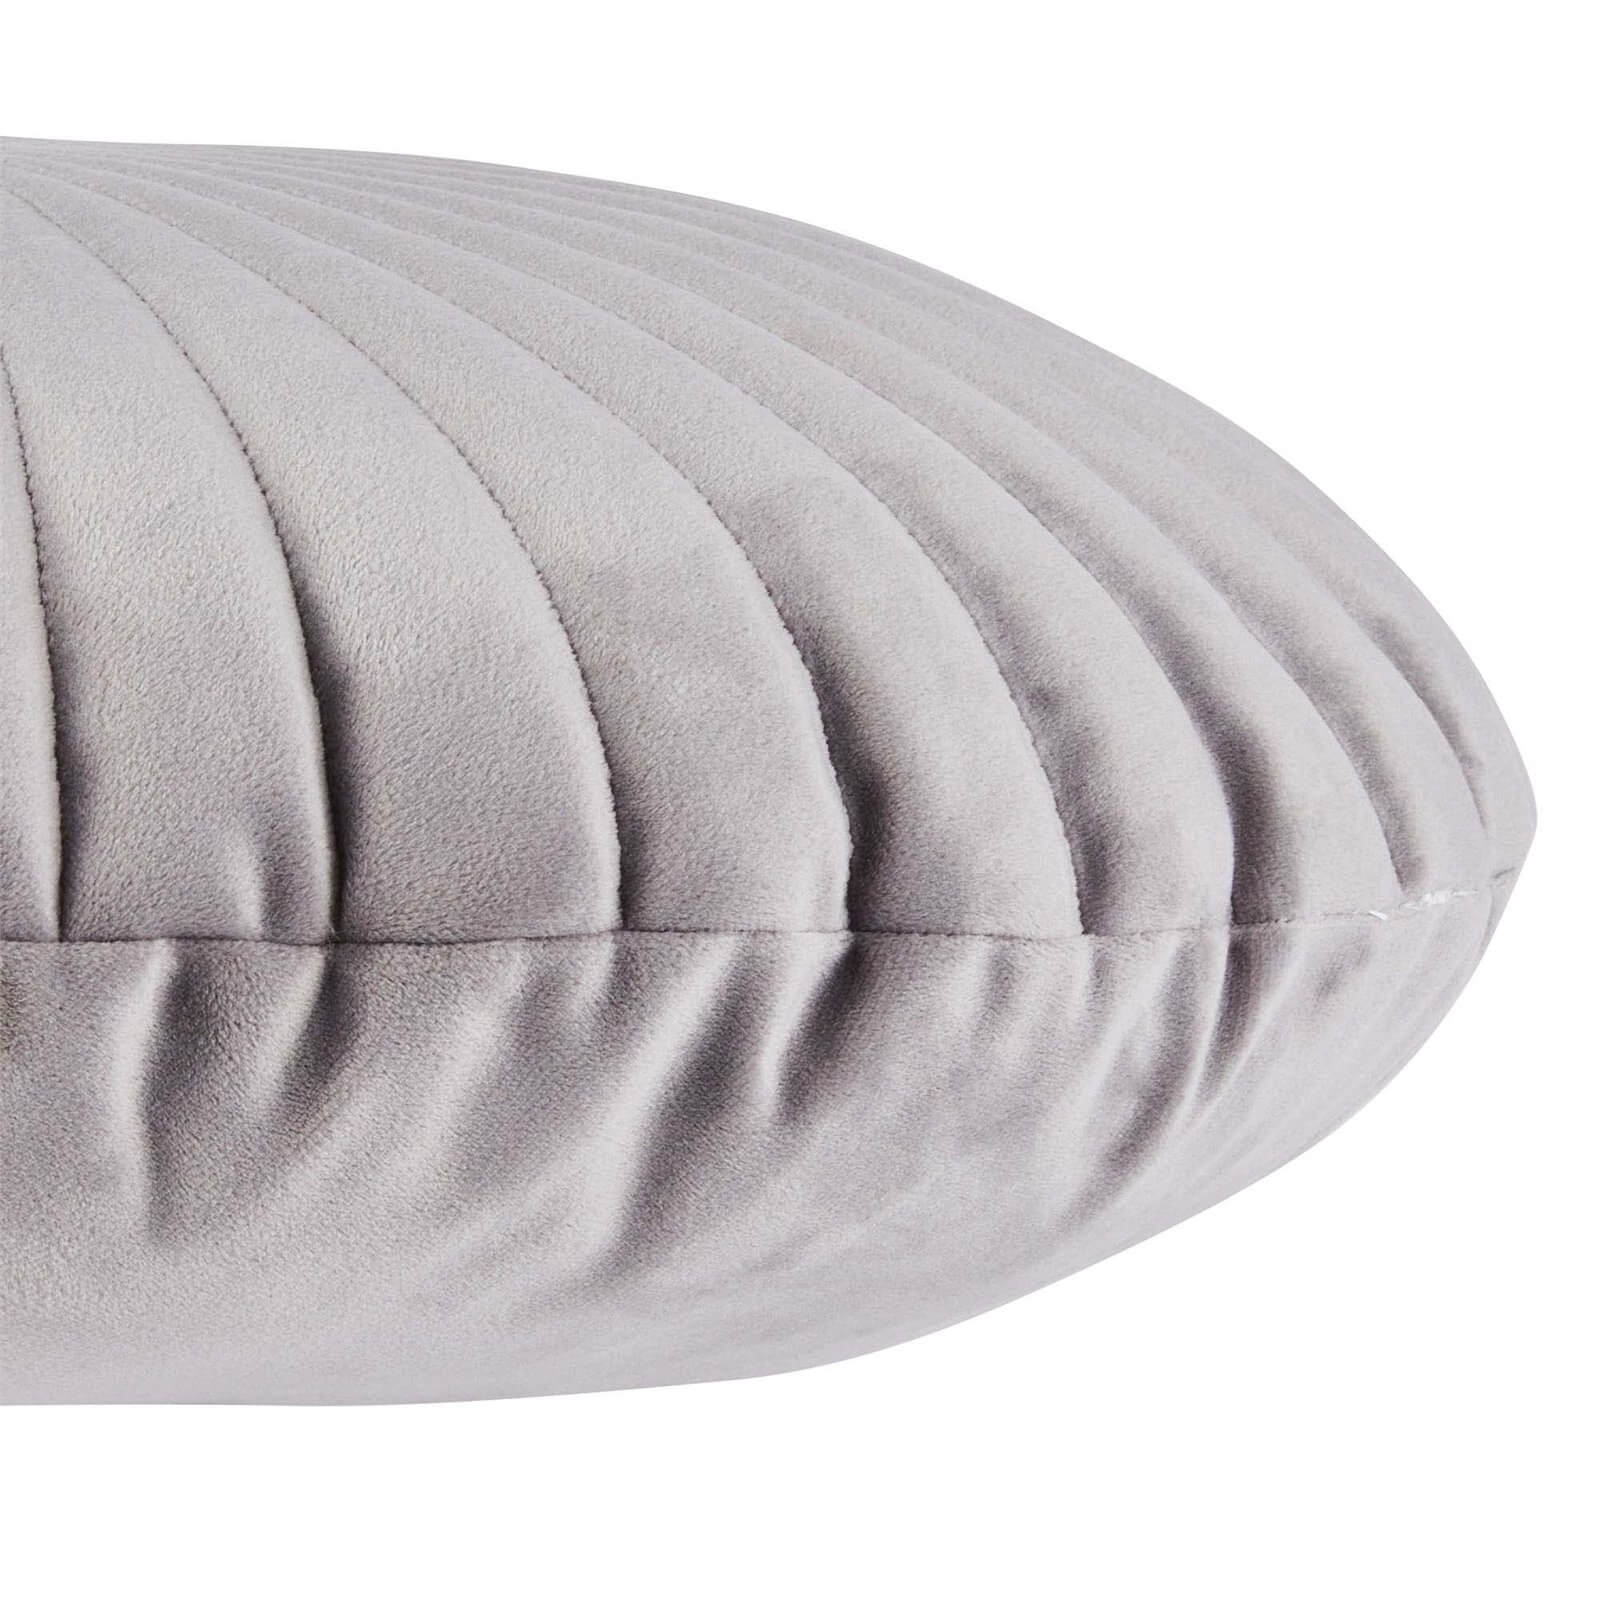 Round Velvet Cushion - Grey - 45cm